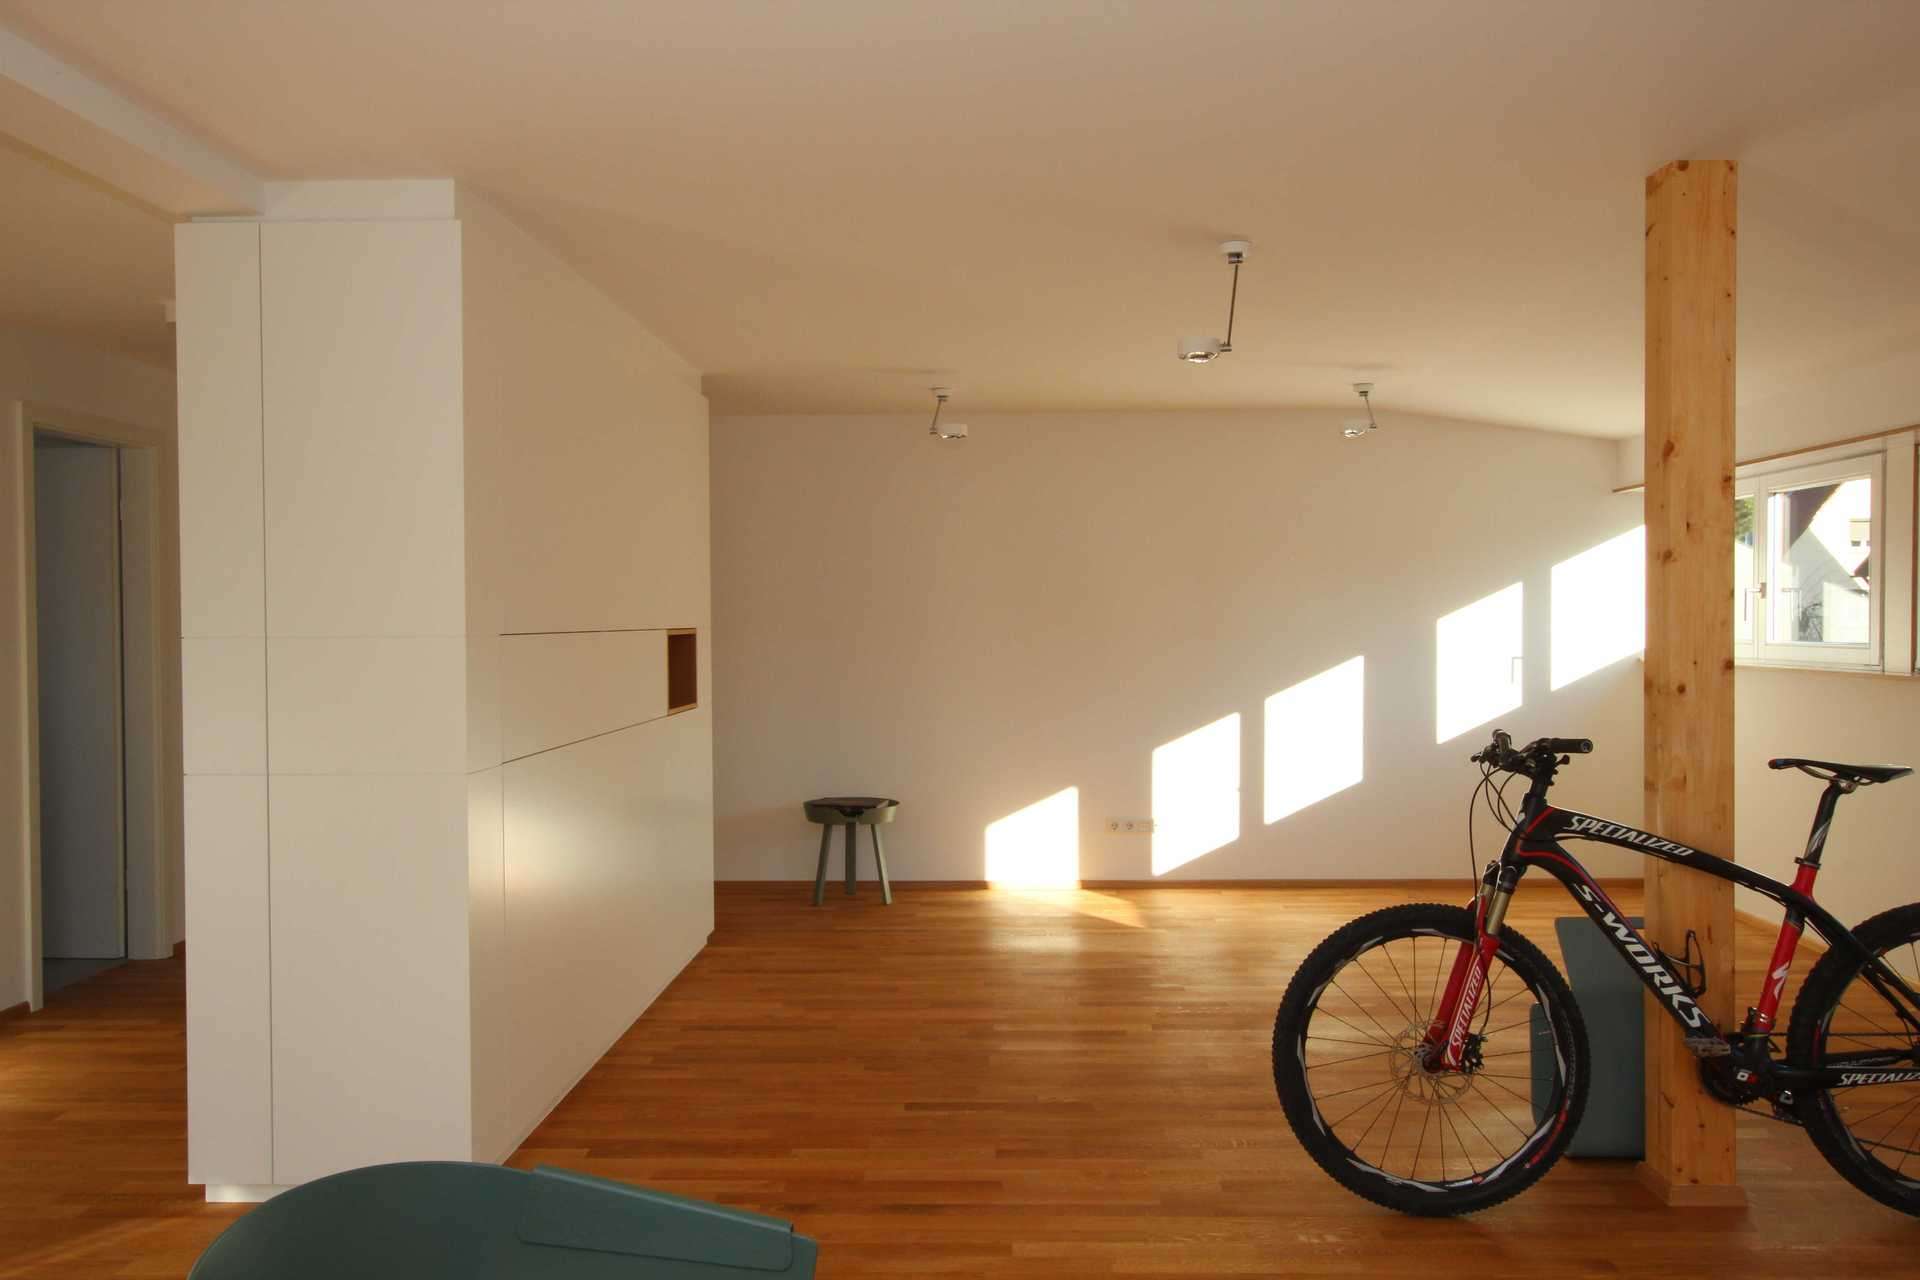 Freistehender Schrank als Raumtrenner, der den Eingangsbereich vom Wohnzimmer trennt. Komplett in weiß. Rennrad steht an Pfeiler im Raum.